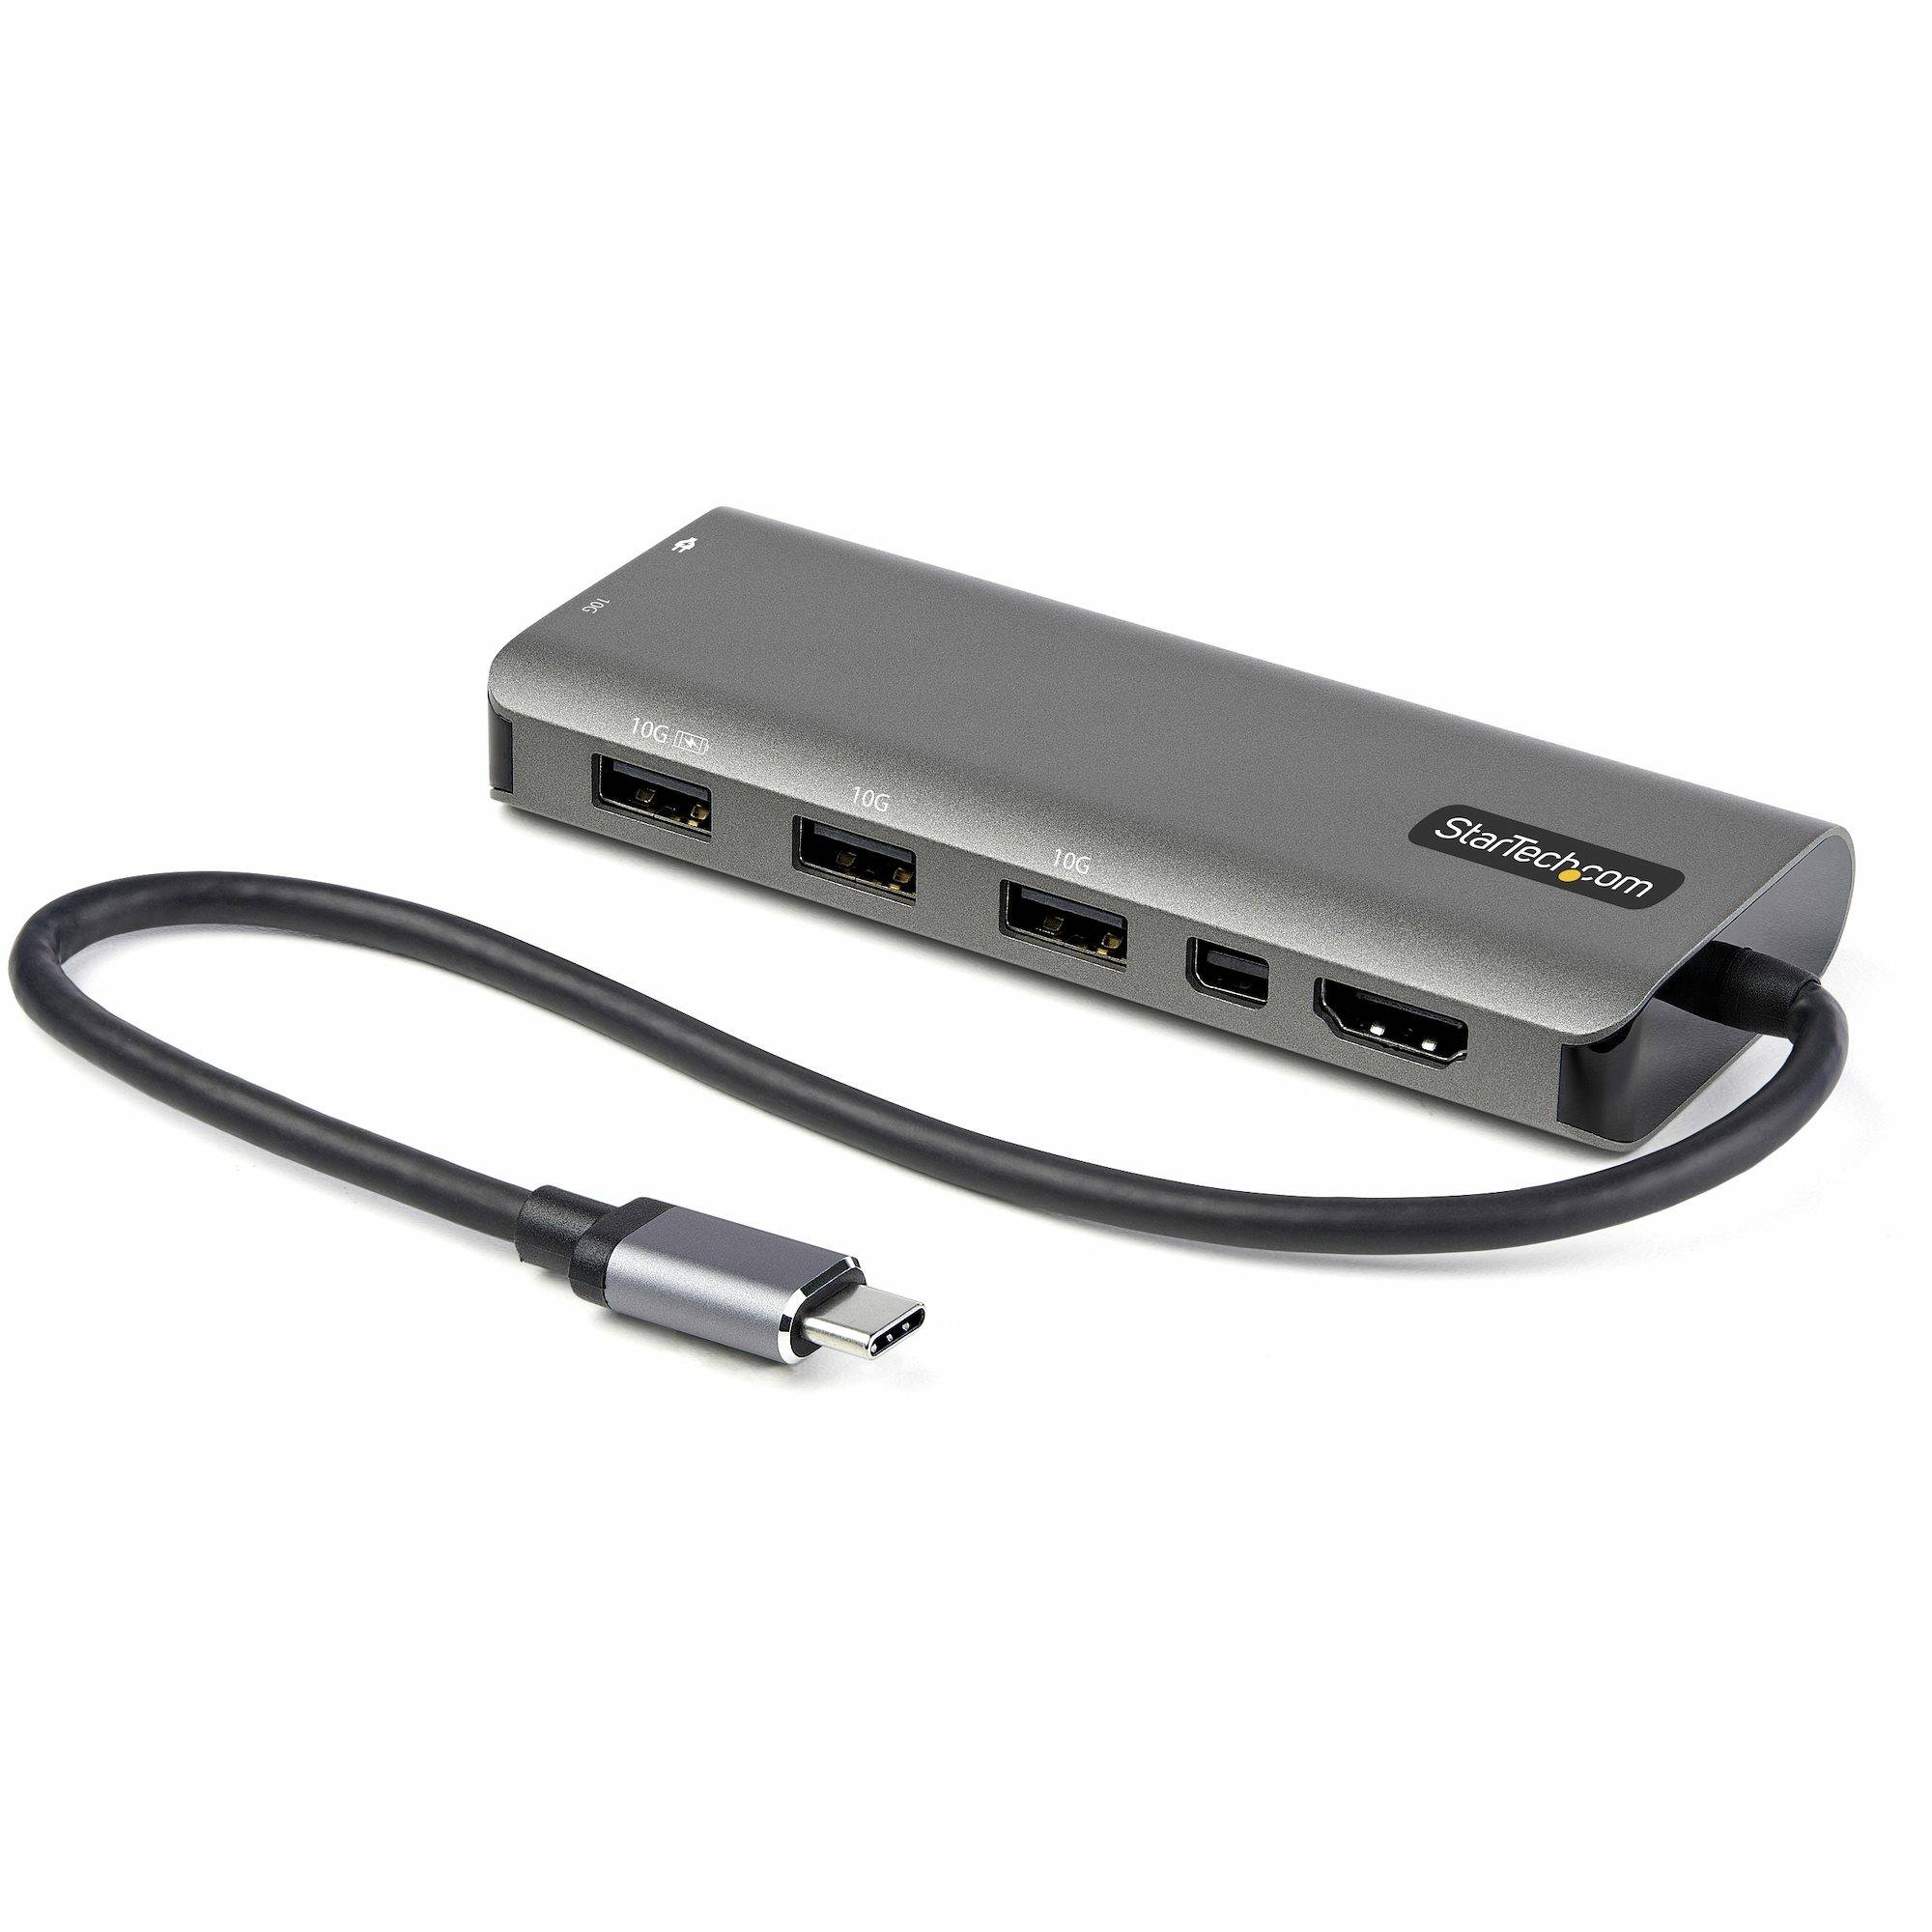 Rca Informatique - Image du produit : USB C MULTIPORT ADAPTER 4K 60HZ HDMI OR MDP - 100 PD PASSTHROUGH